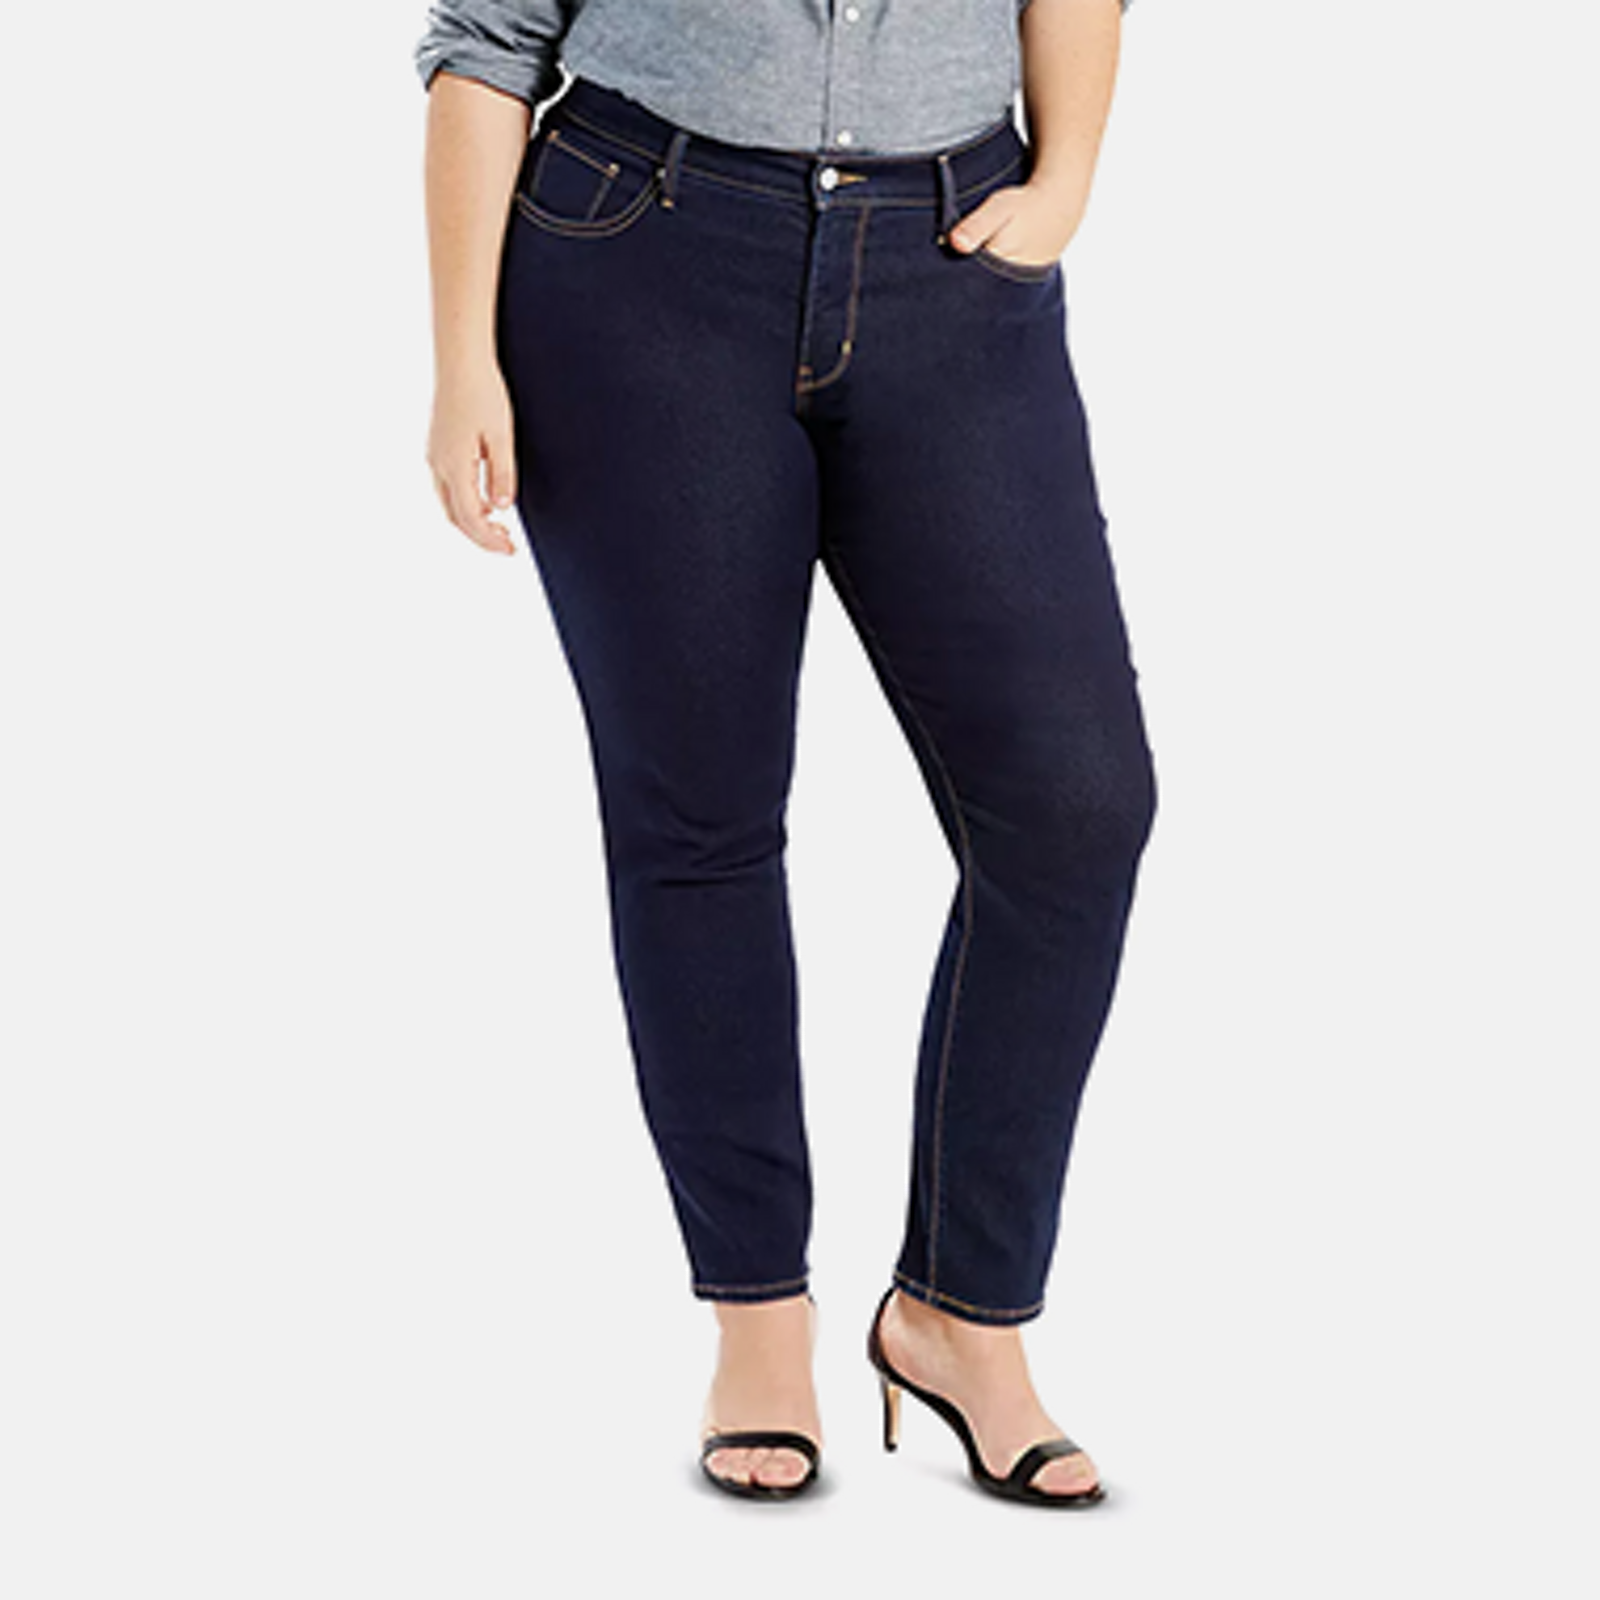 Jeggings Grey Jeans For Women - Macy's